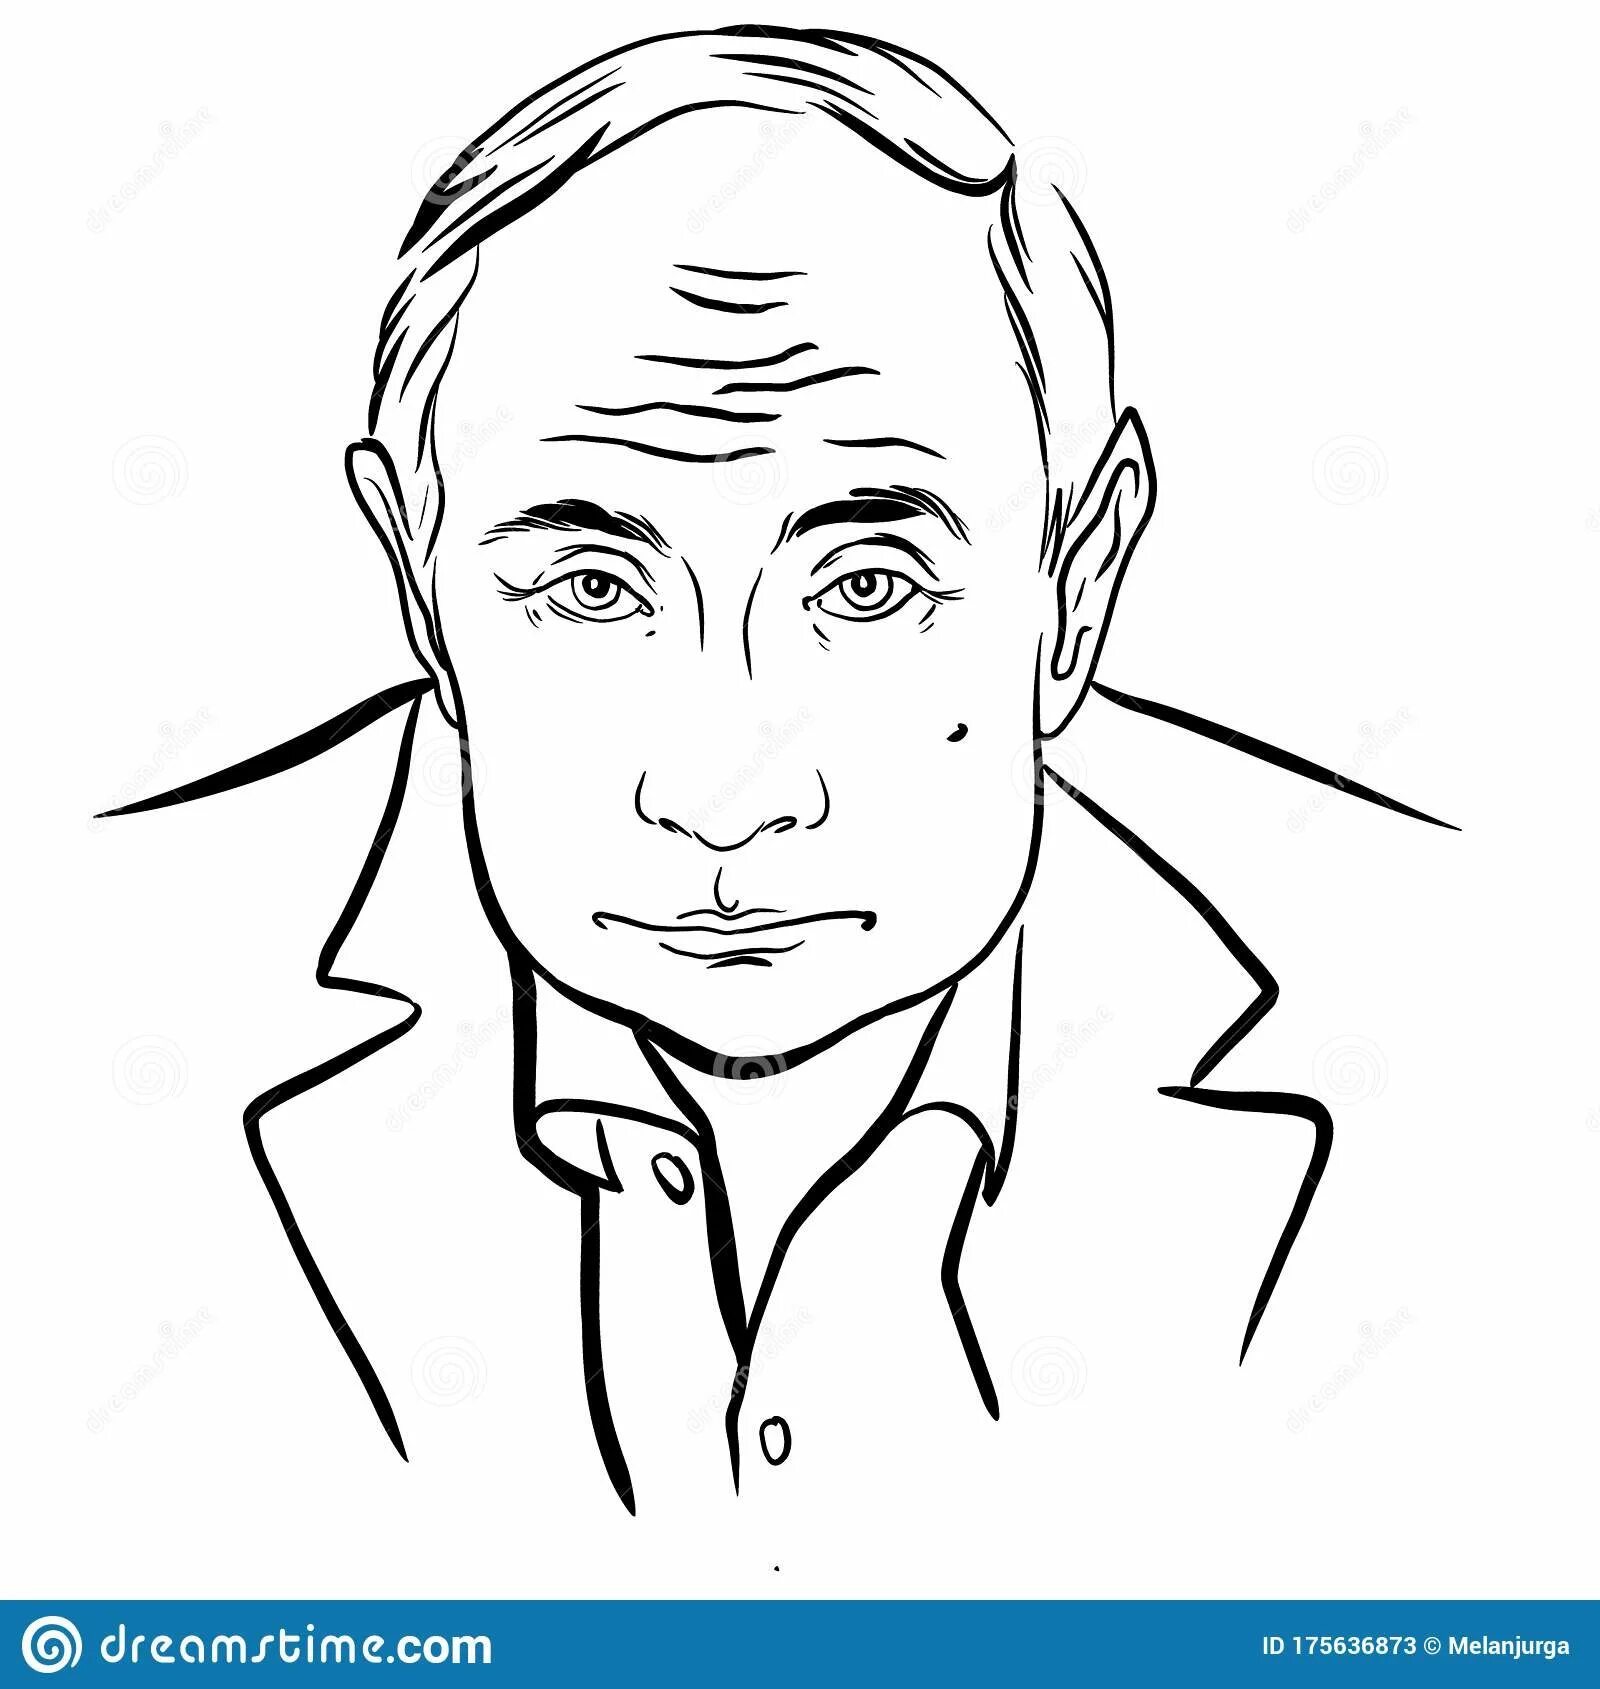 Putin Vladimir Vladimirovich #6